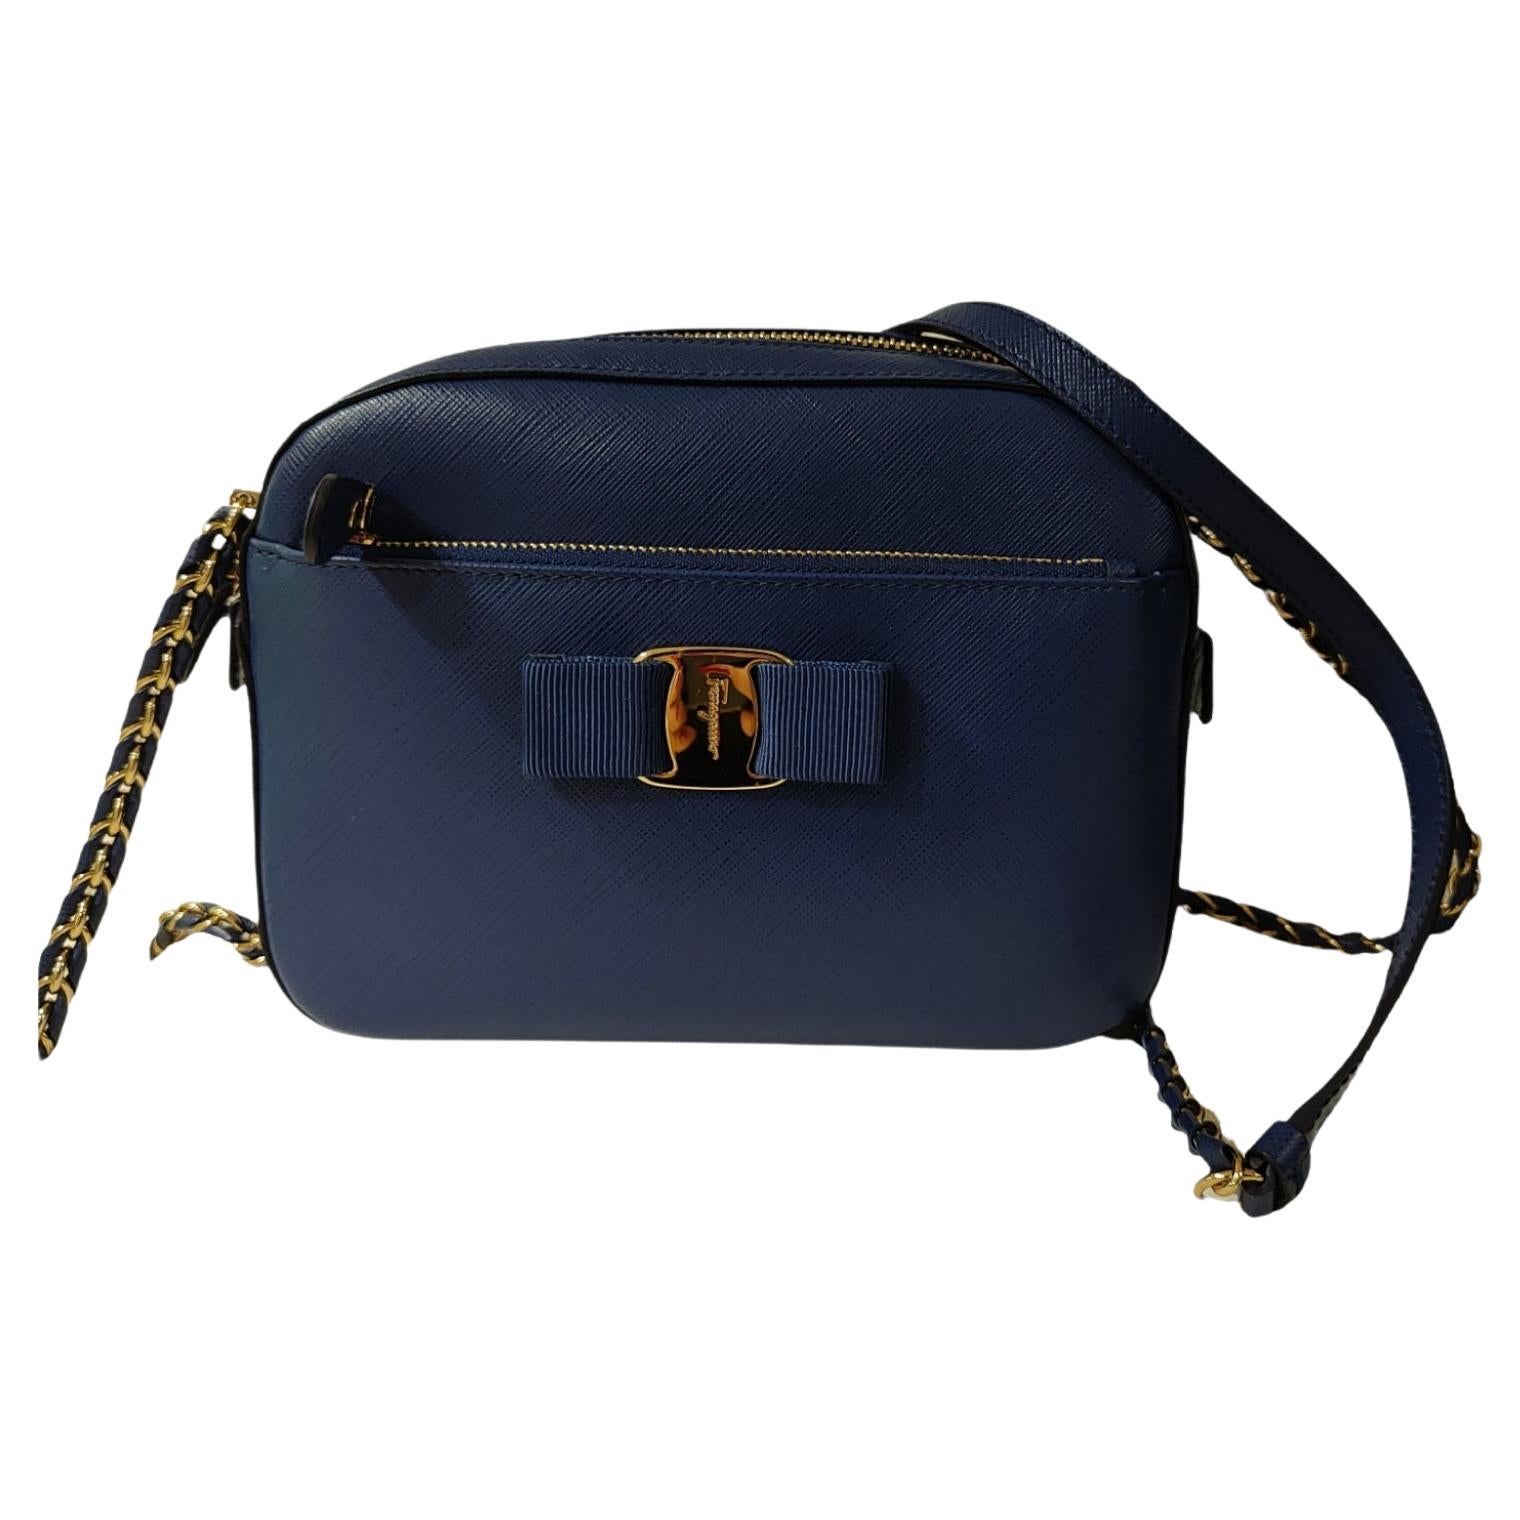 Salvatore Ferragamo Black Leather Top Handle Tote Handbag Shoulder Bag ...